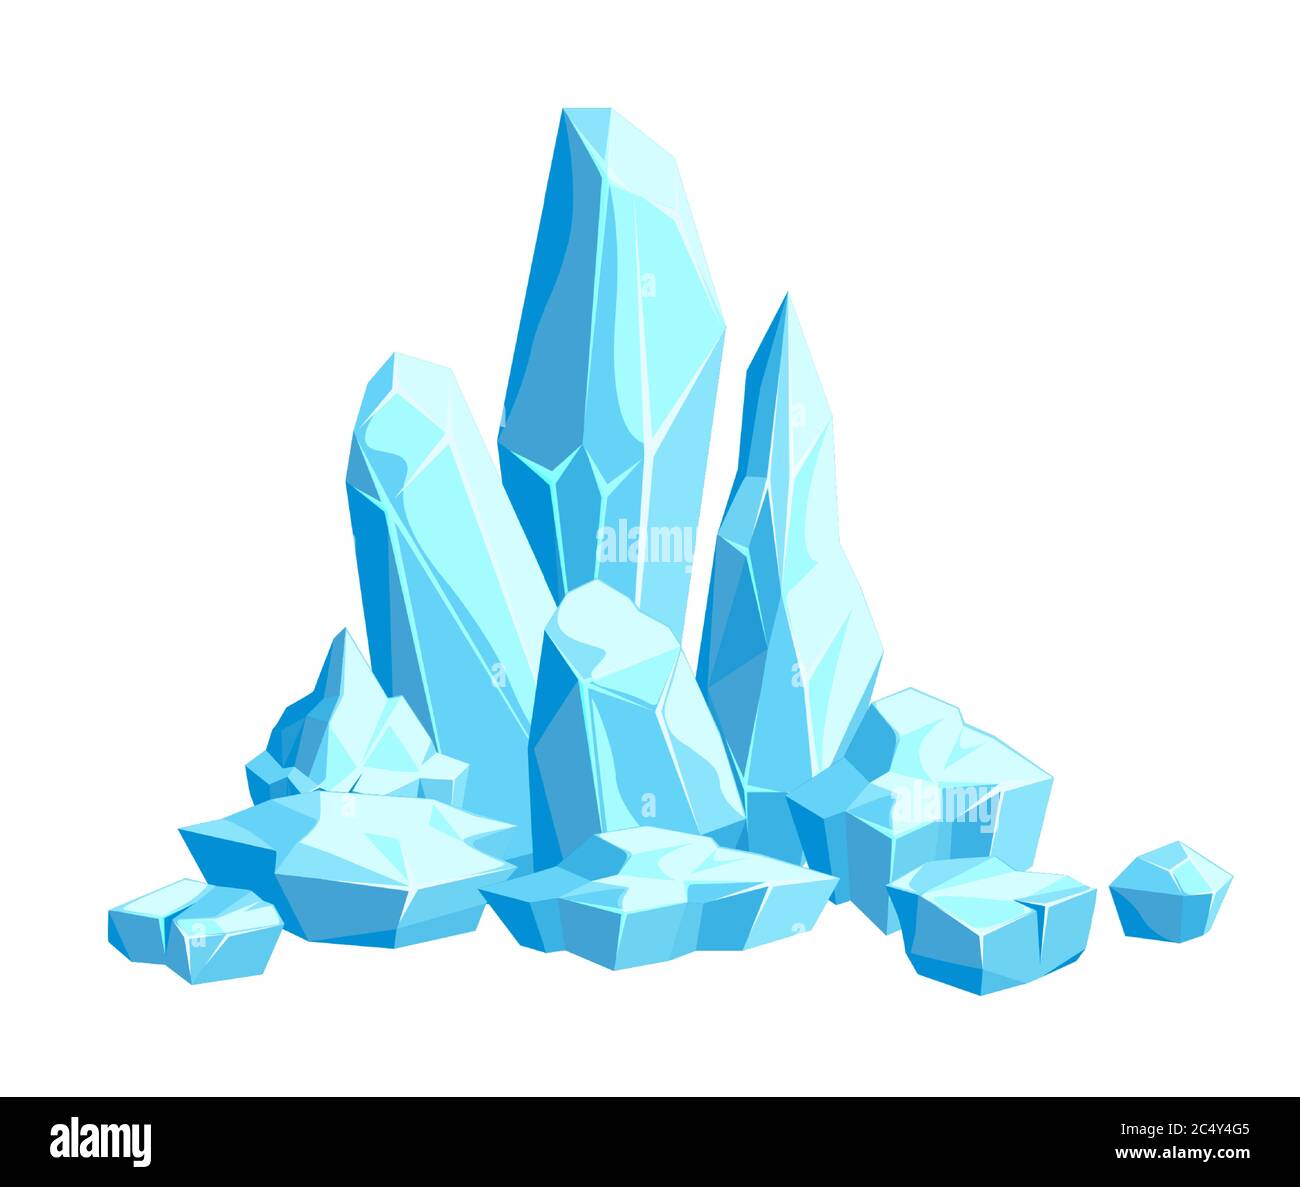 Pezzi e cristalli di ghiaccio, iceberg per il design e l'arredamento Illustrazione Vettoriale